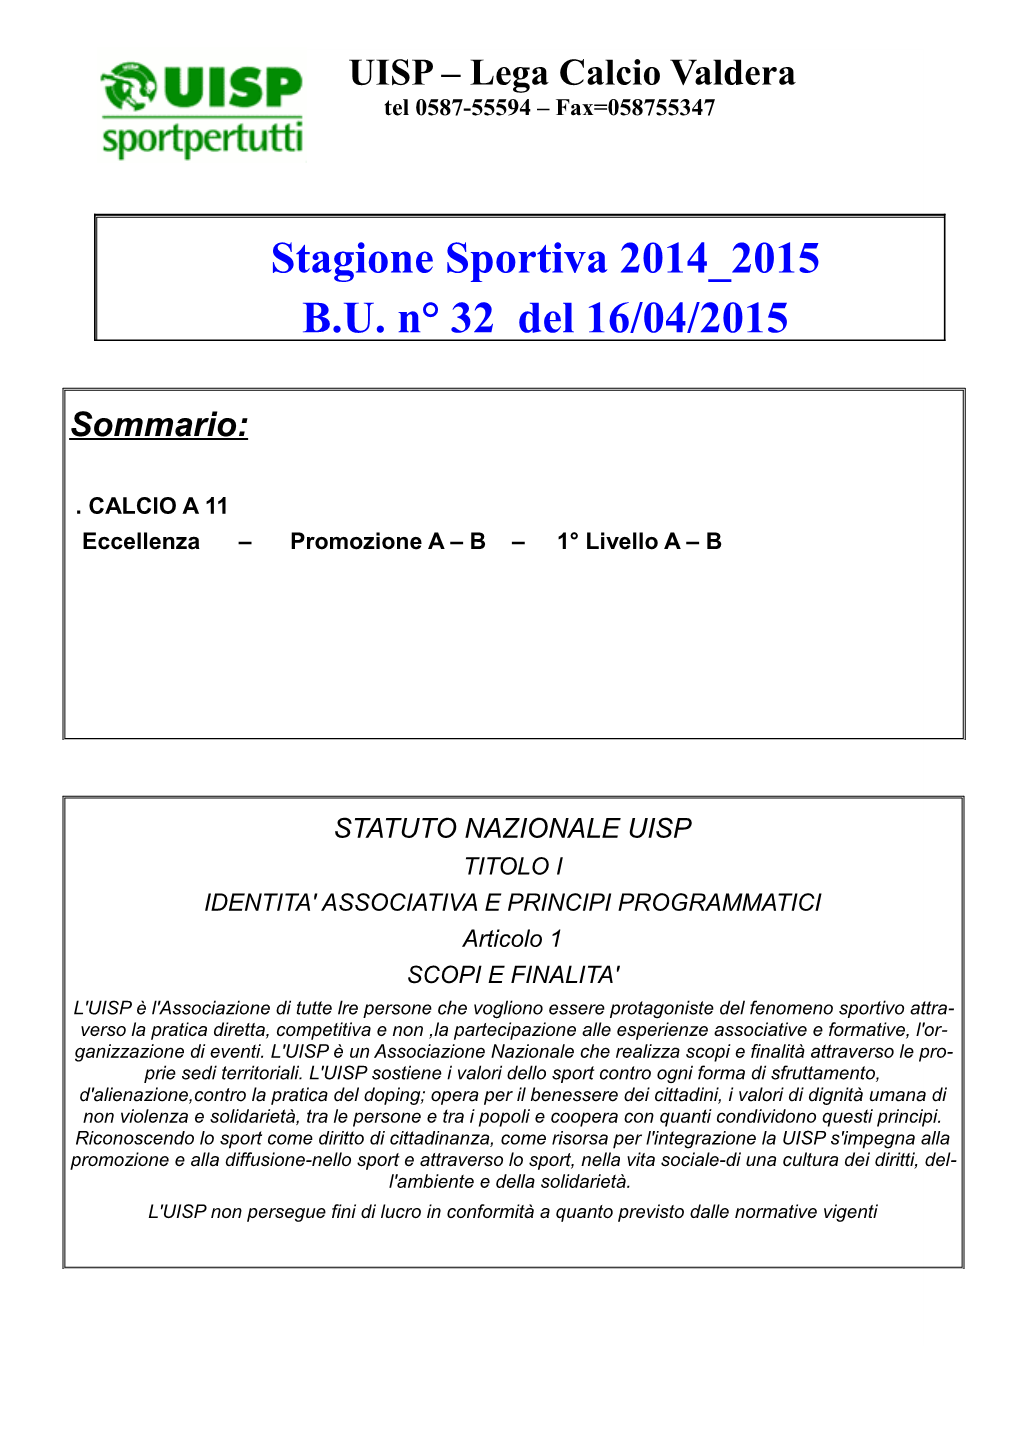 Stagione Sportiva 2014 2015 B.U. N° 32 Del 16/04/2015